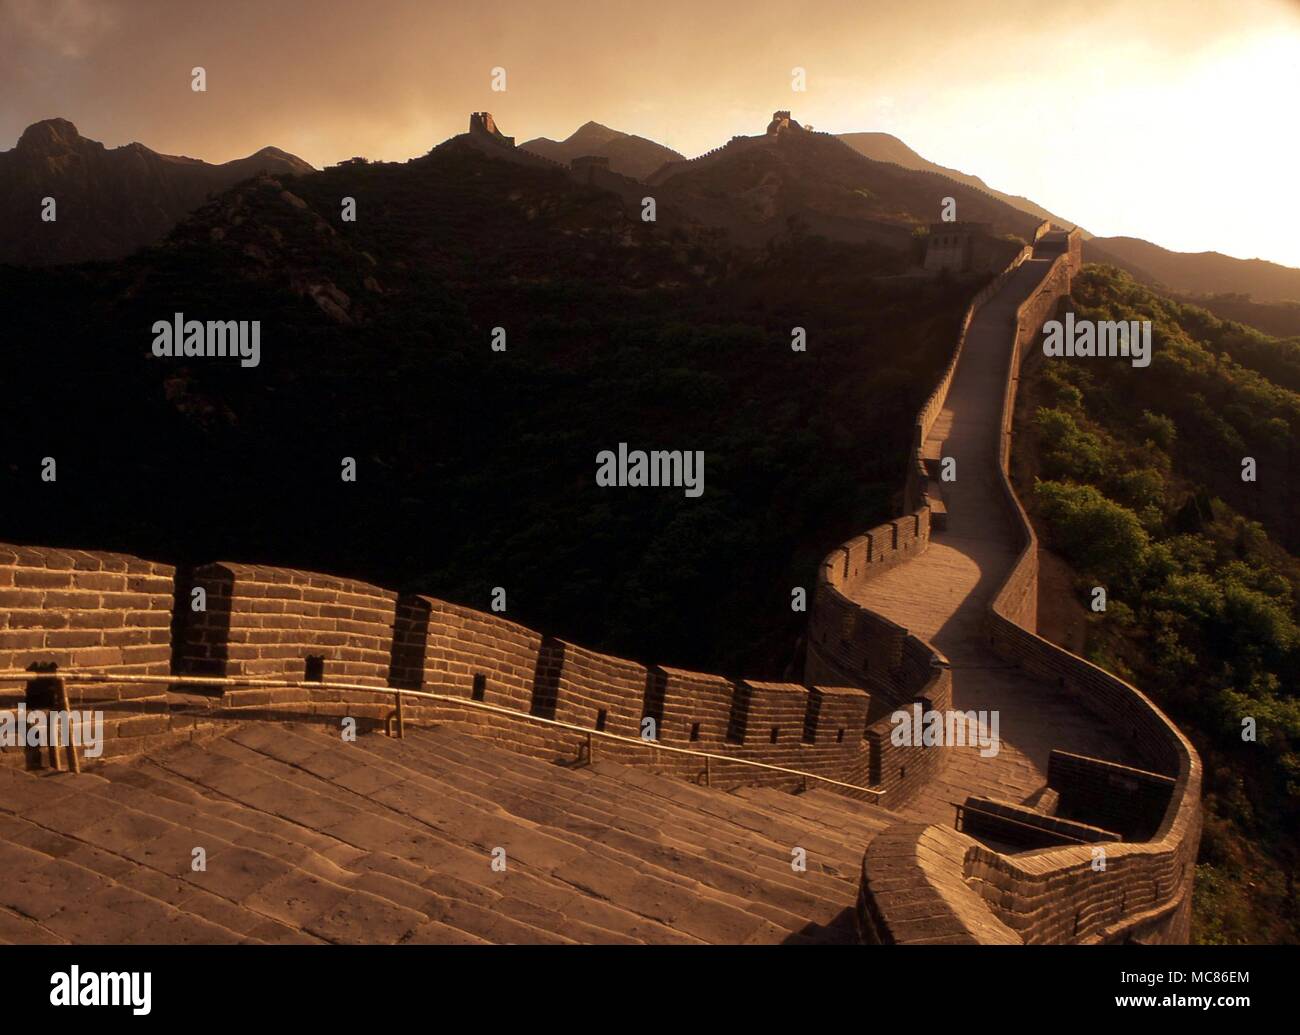 The Great Wall of China (Wan Li Chang Cheng) at Badaling, north of Beijing Stock Photo